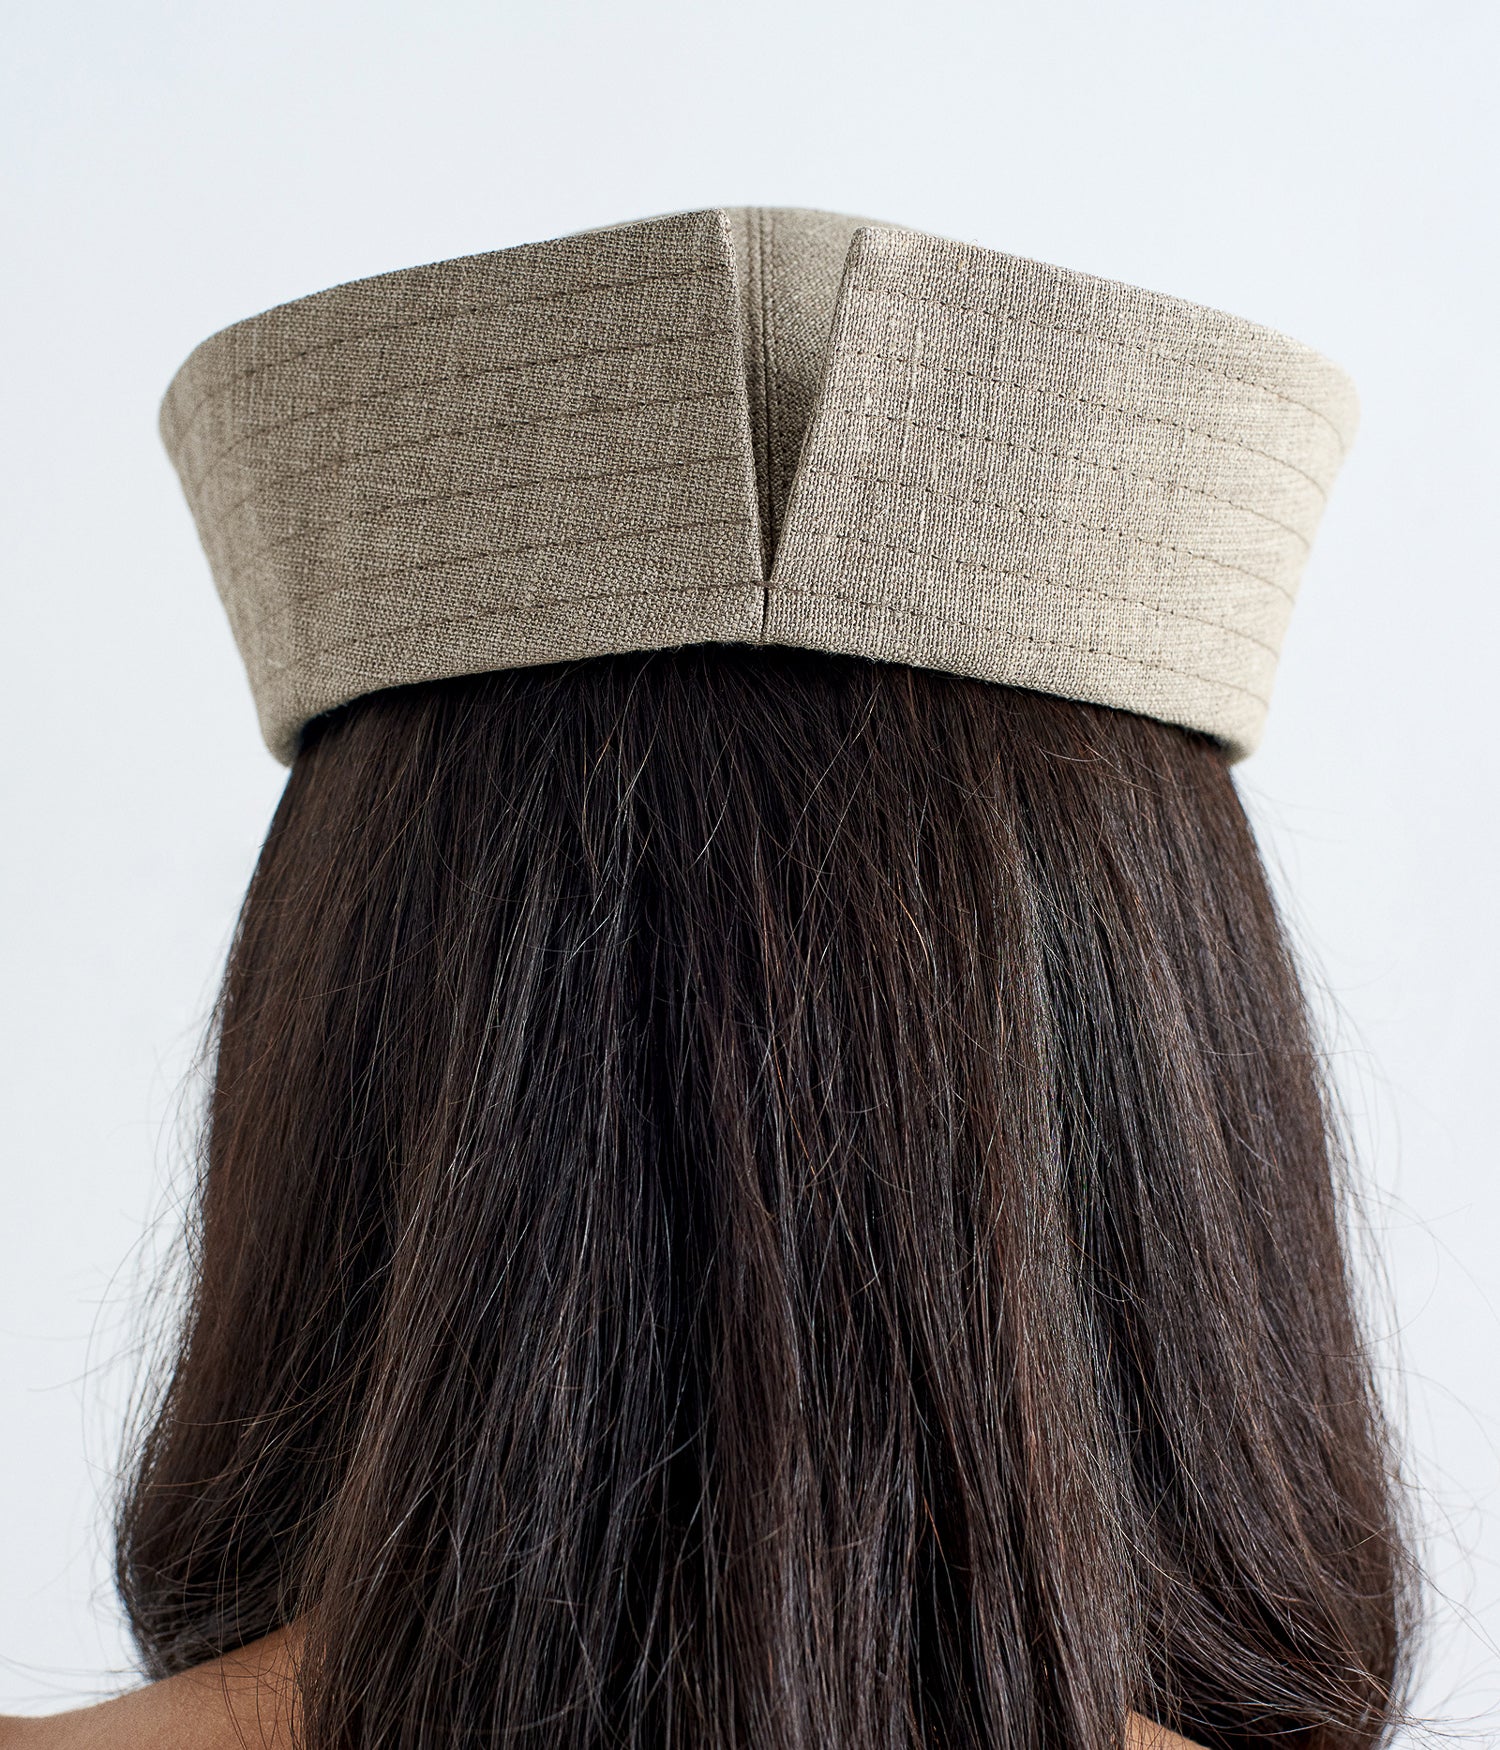 Monogram-embellished Linen Sailor Hat